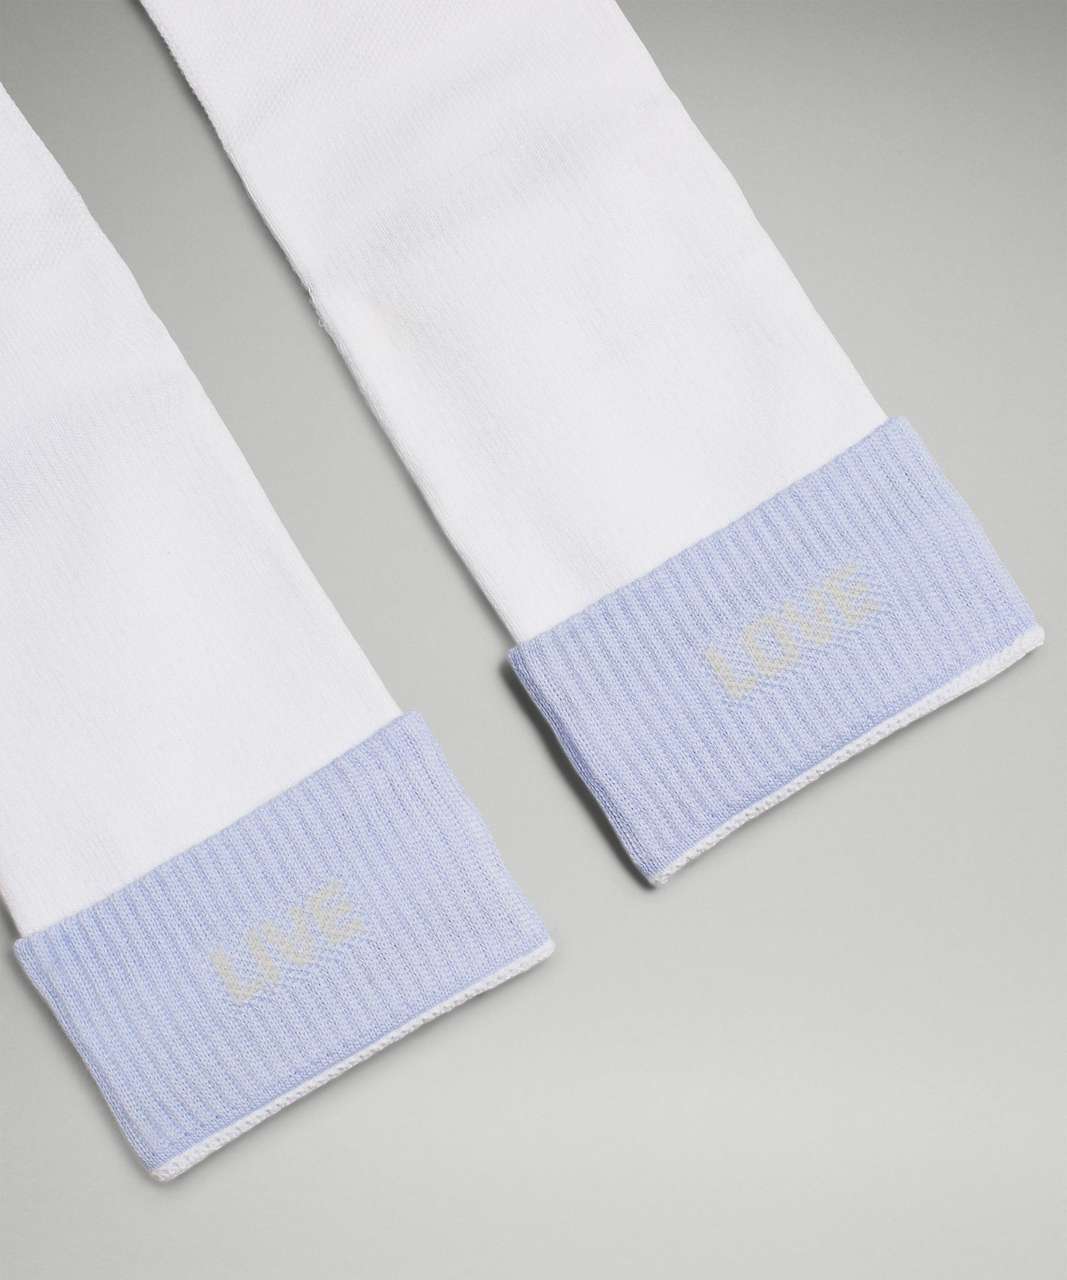 Lululemon Womens Daily Stride Comfort Crew Sock - White / Blue Linen